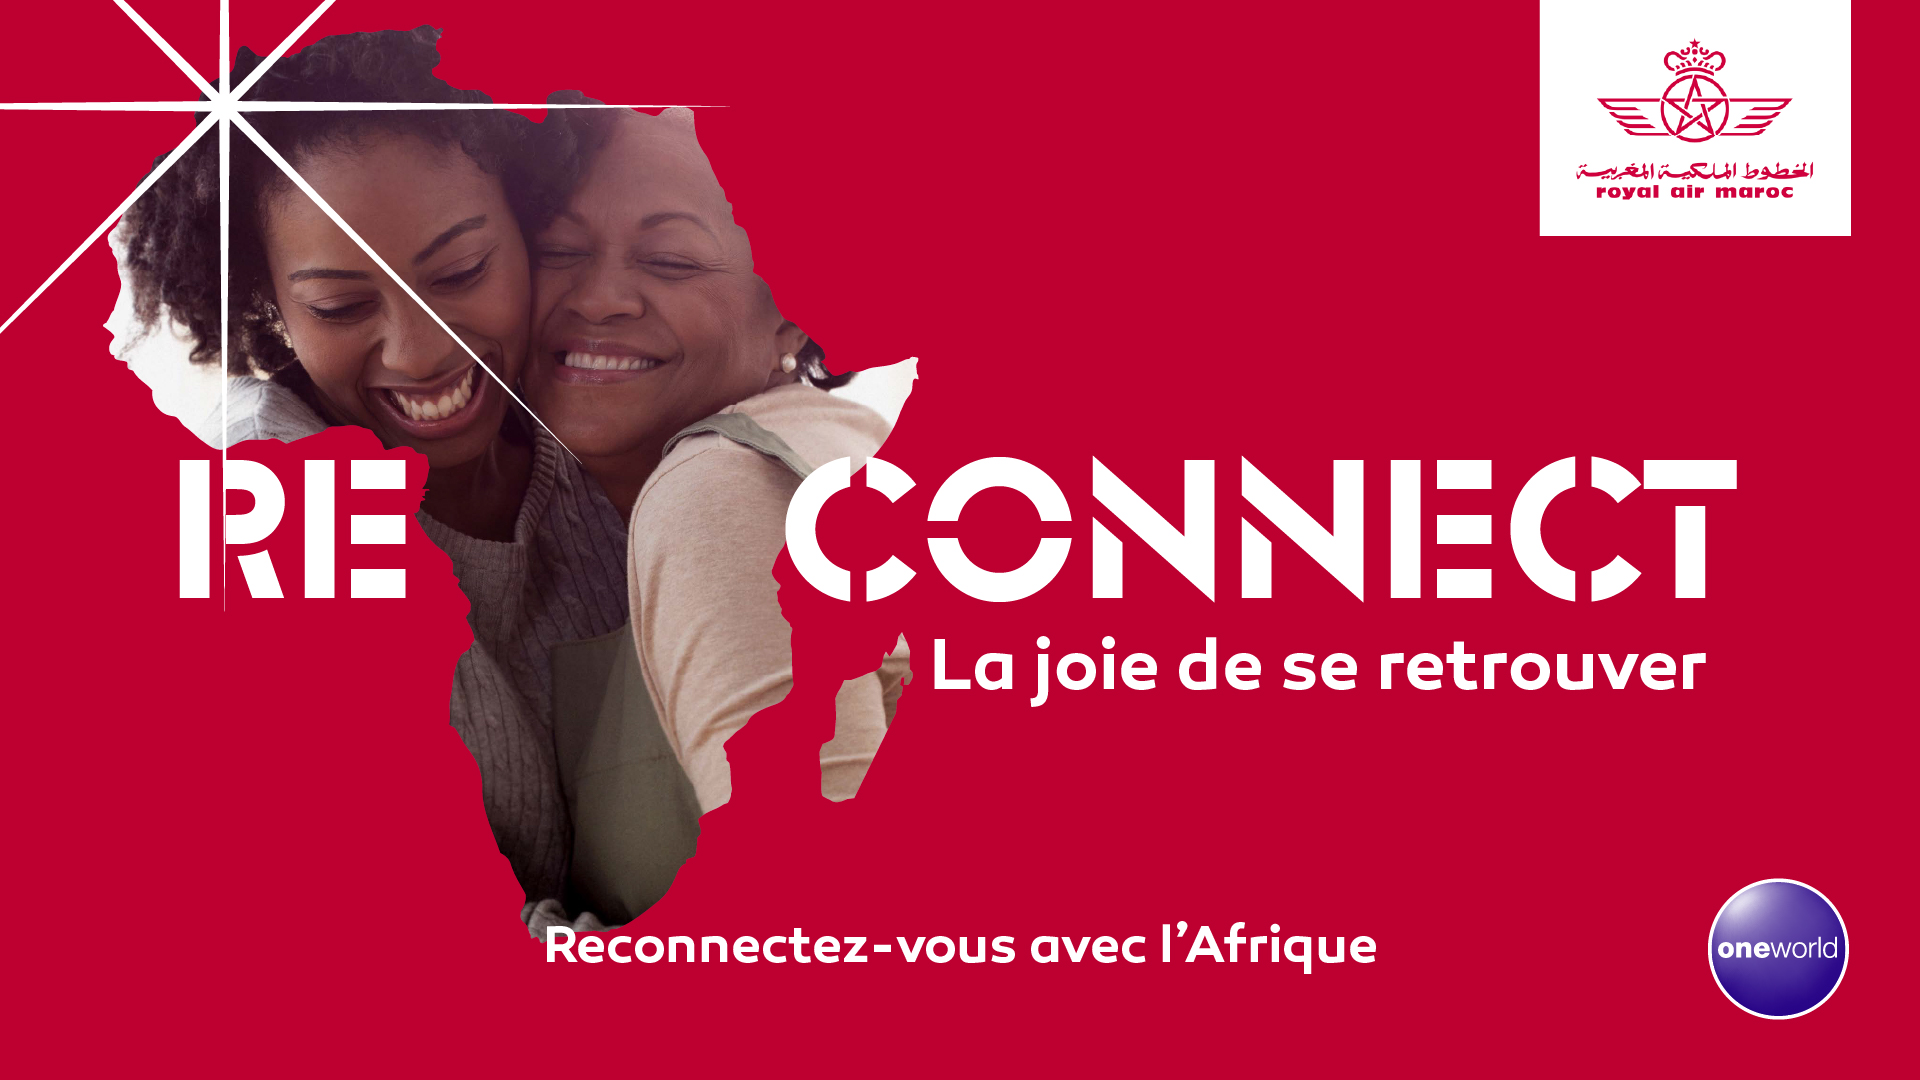 Royal Air Maroc renforce son offre entre la France et l’Afrique